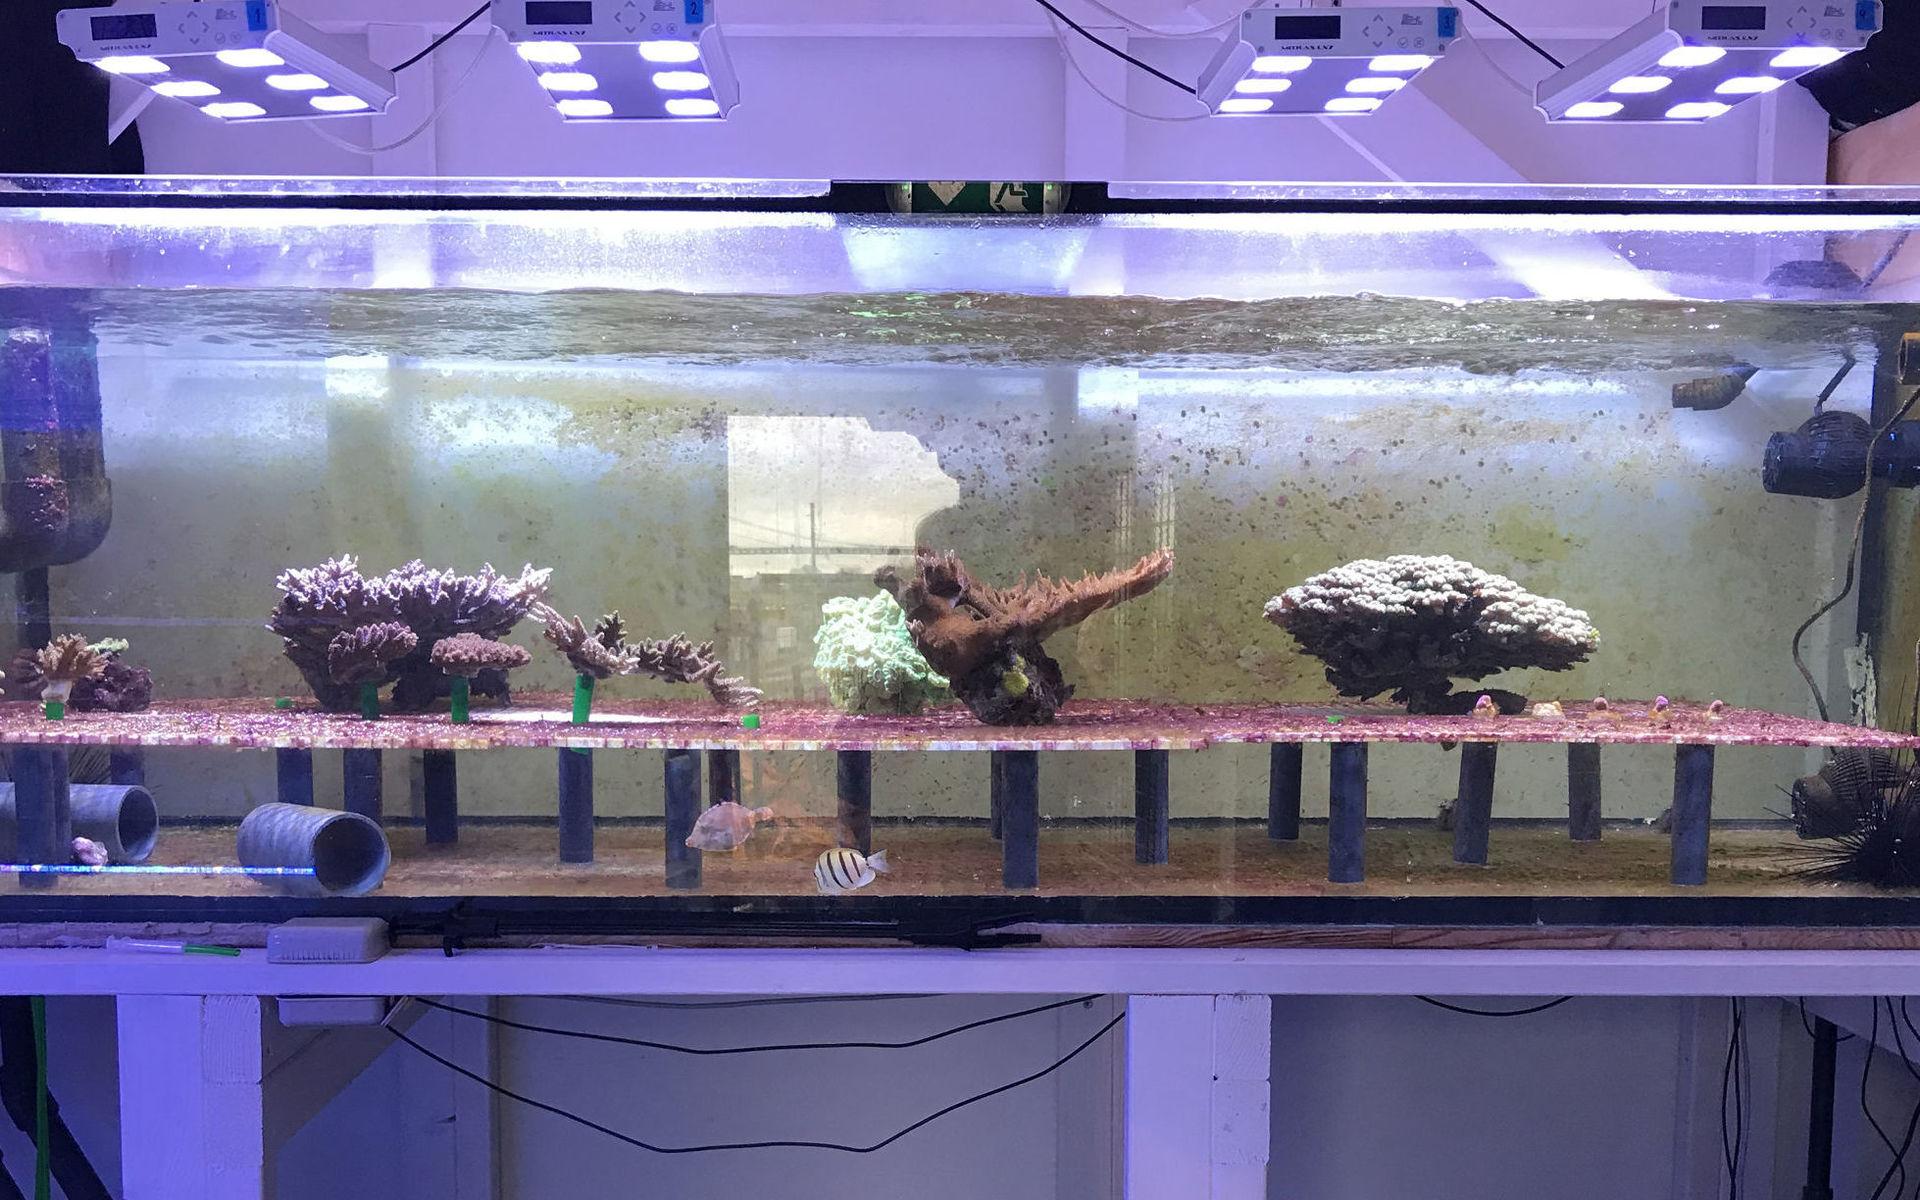 Kanske inte den mest romantiska miljön enligt oss människor. Men här i ett experimentakvarium har flera koraller placerats för att förhoppningsvis para sig.